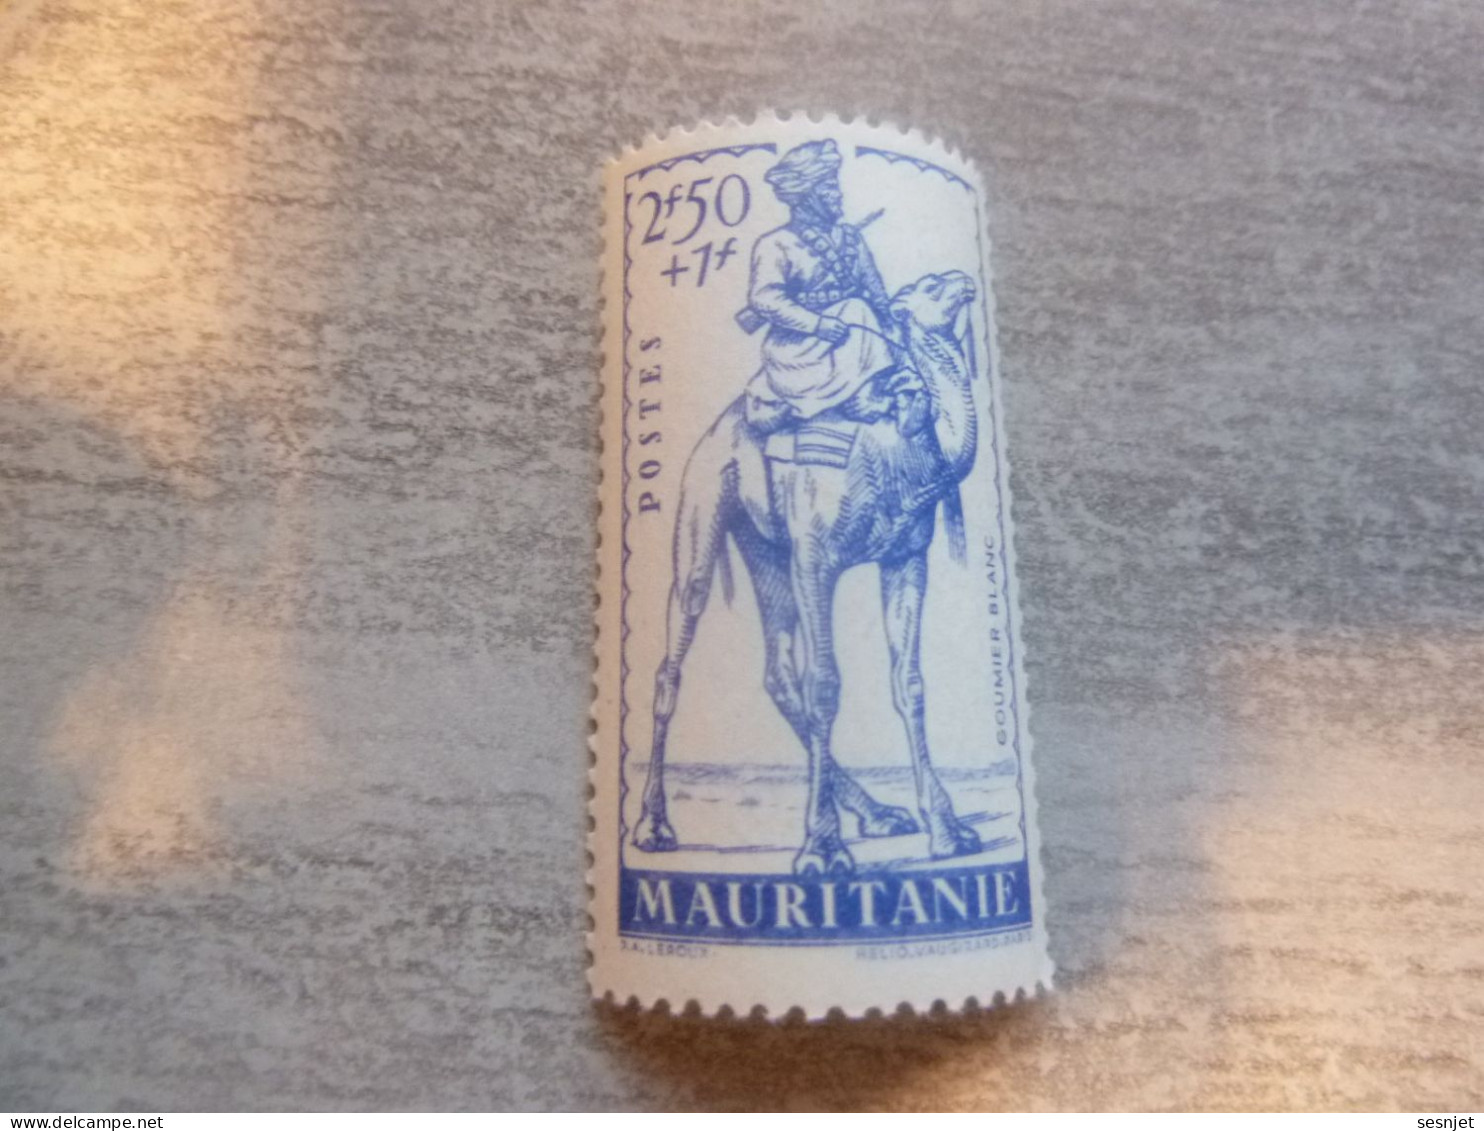 Mauritanie - Défense De L'Empire - Goumier Blanc - 2f.50+1f. - Yt 118 - Bleu - Neuf Sans Trace - Année 1941 - - Ongebruikt